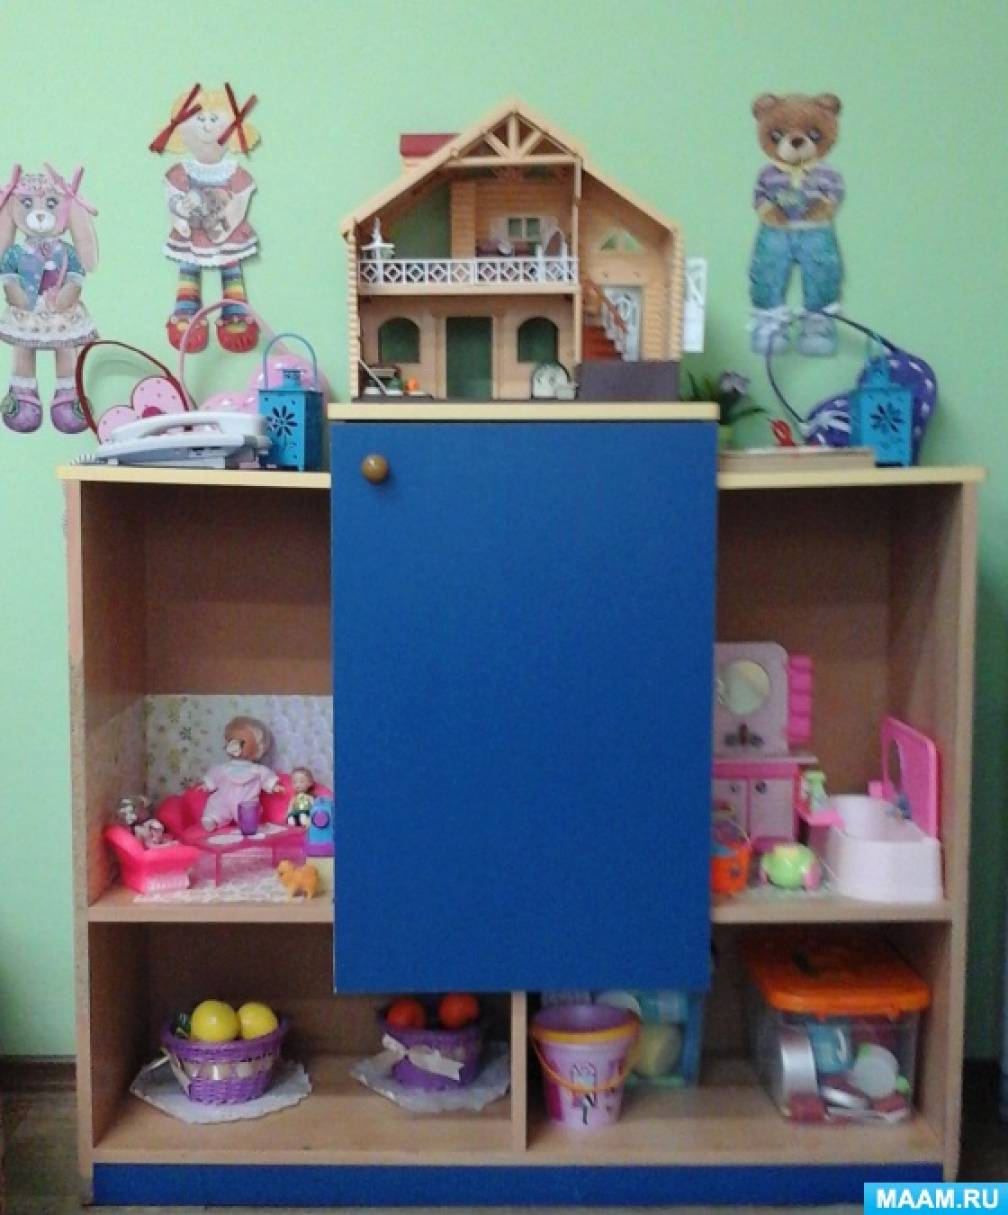 Как сделать домик для кукол своими руками из коробок: пошаговая инструкция | sauna-ernesto.ru